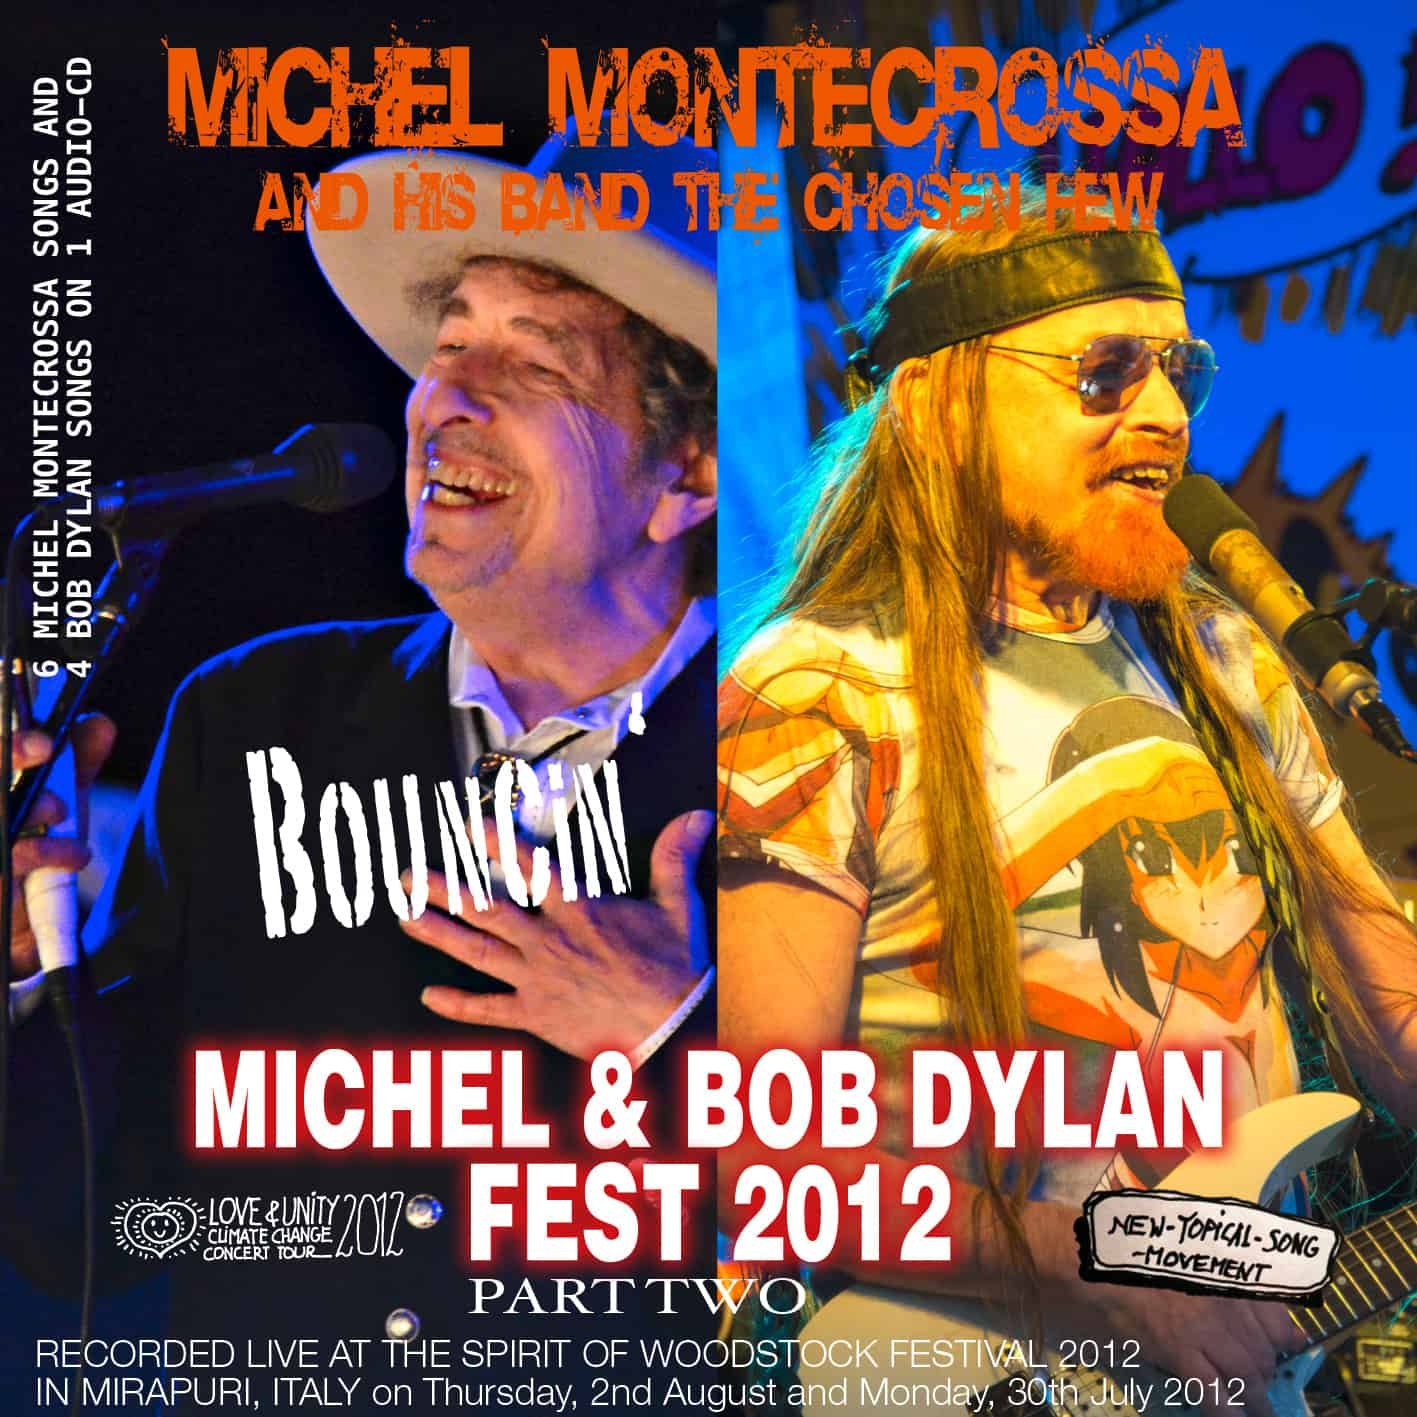 Bouncin' - Part Two of Michel Montecrossa's Michel & Bob Dylan Fest 2012